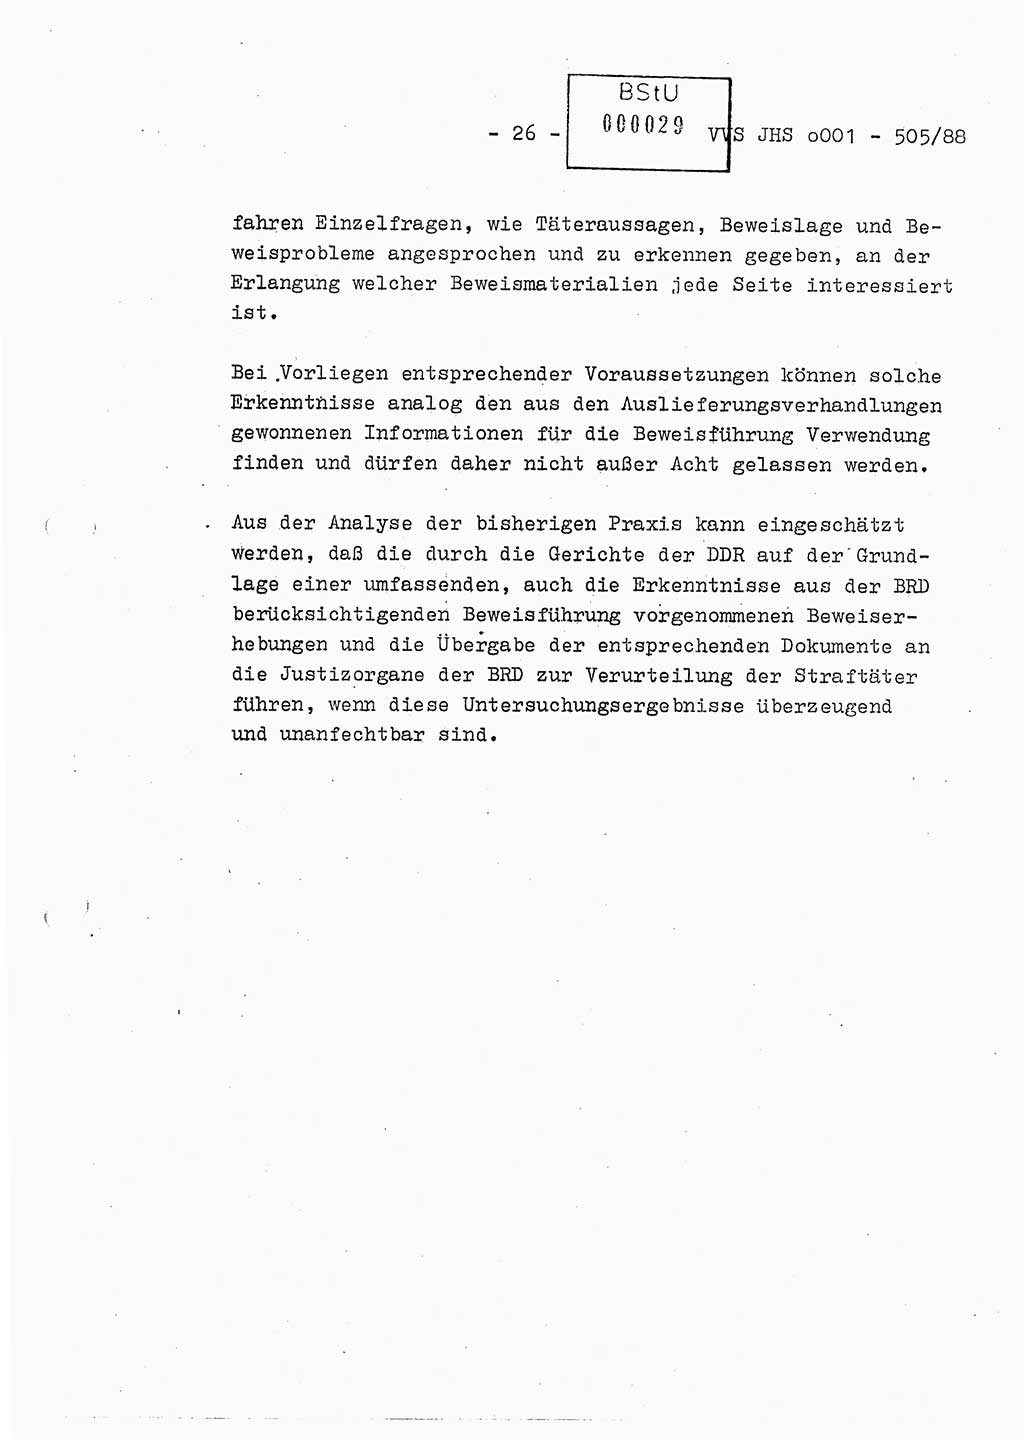 Diplomarbeit Leutnant Frank Schulze (HA Ⅸ/9), Ministerium für Staatssicherheit (MfS) [Deutsche Demokratische Republik (DDR)], Juristische Hochschule (JHS), Vertrauliche Verschlußsache (VVS) o001-505/88, Potsdam 1988, Seite 26 (Dipl.-Arb. MfS DDR JHS VVS o001-505/88 1988, S. 26)